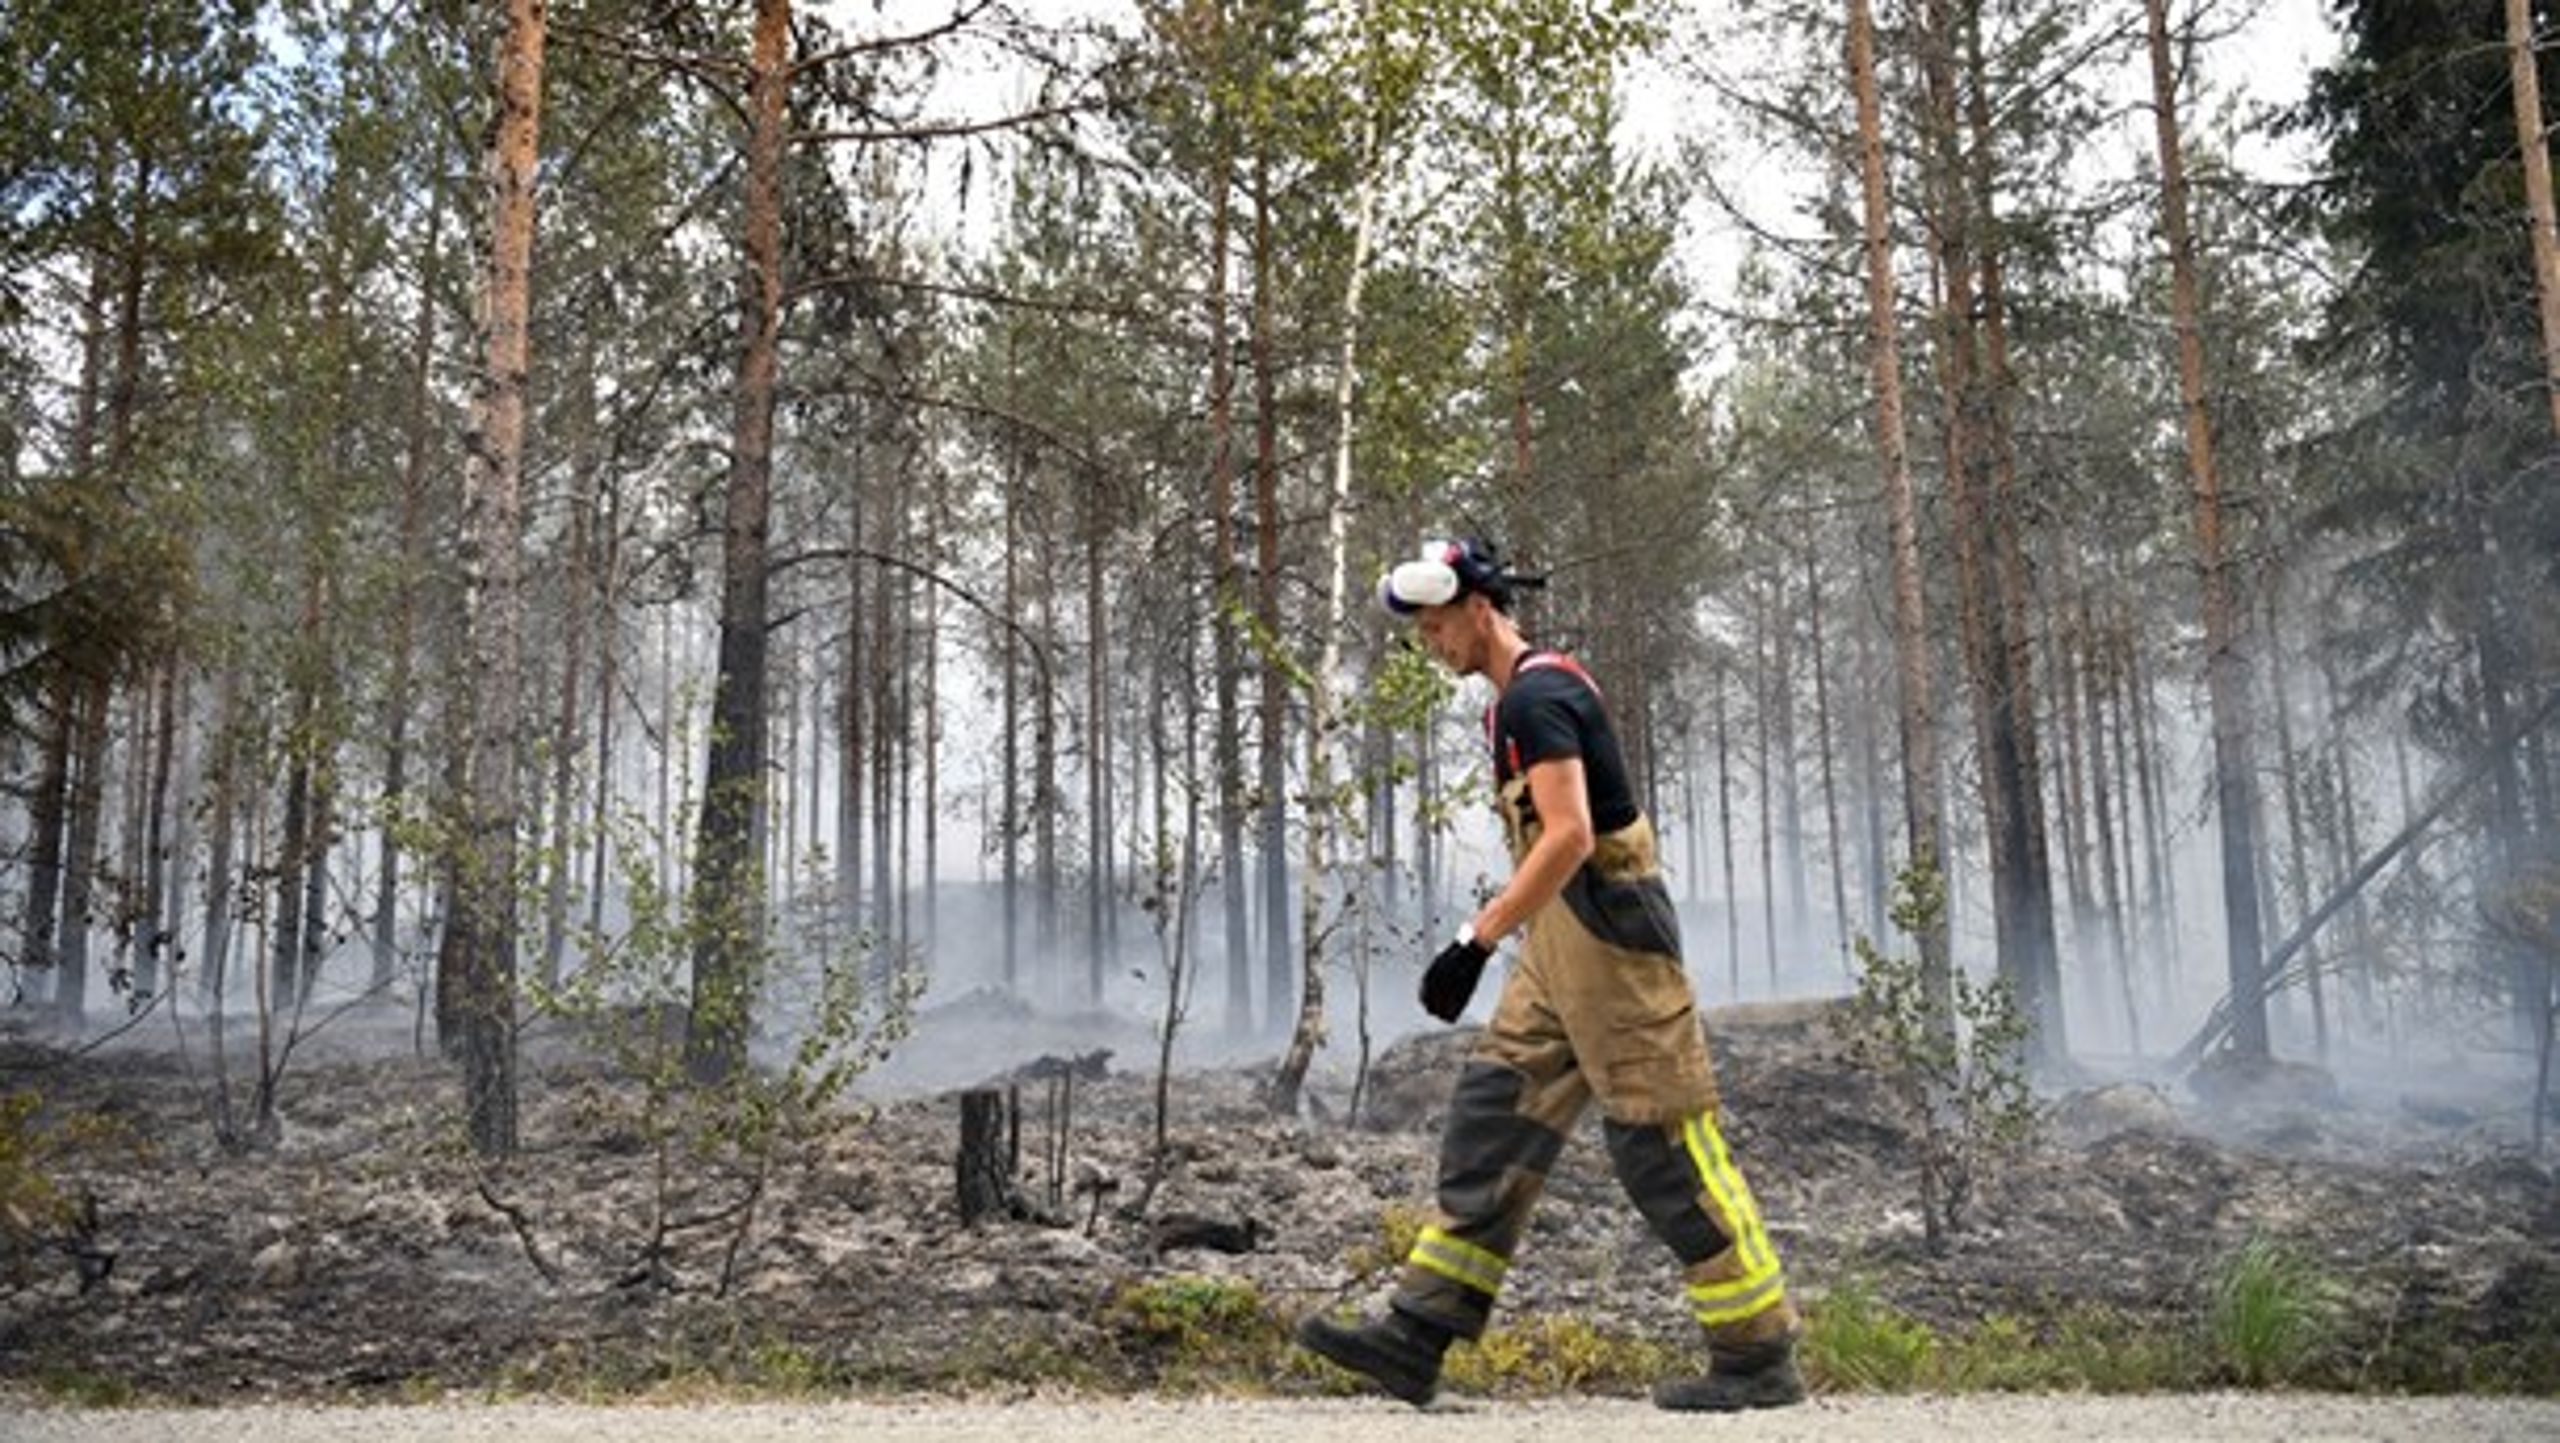 "I utredningarna av de senaste årens omfattande skogsbränder framgår som sagt att uthålligheten över tid är en kritisk faktor, då det kräver mycket personal."